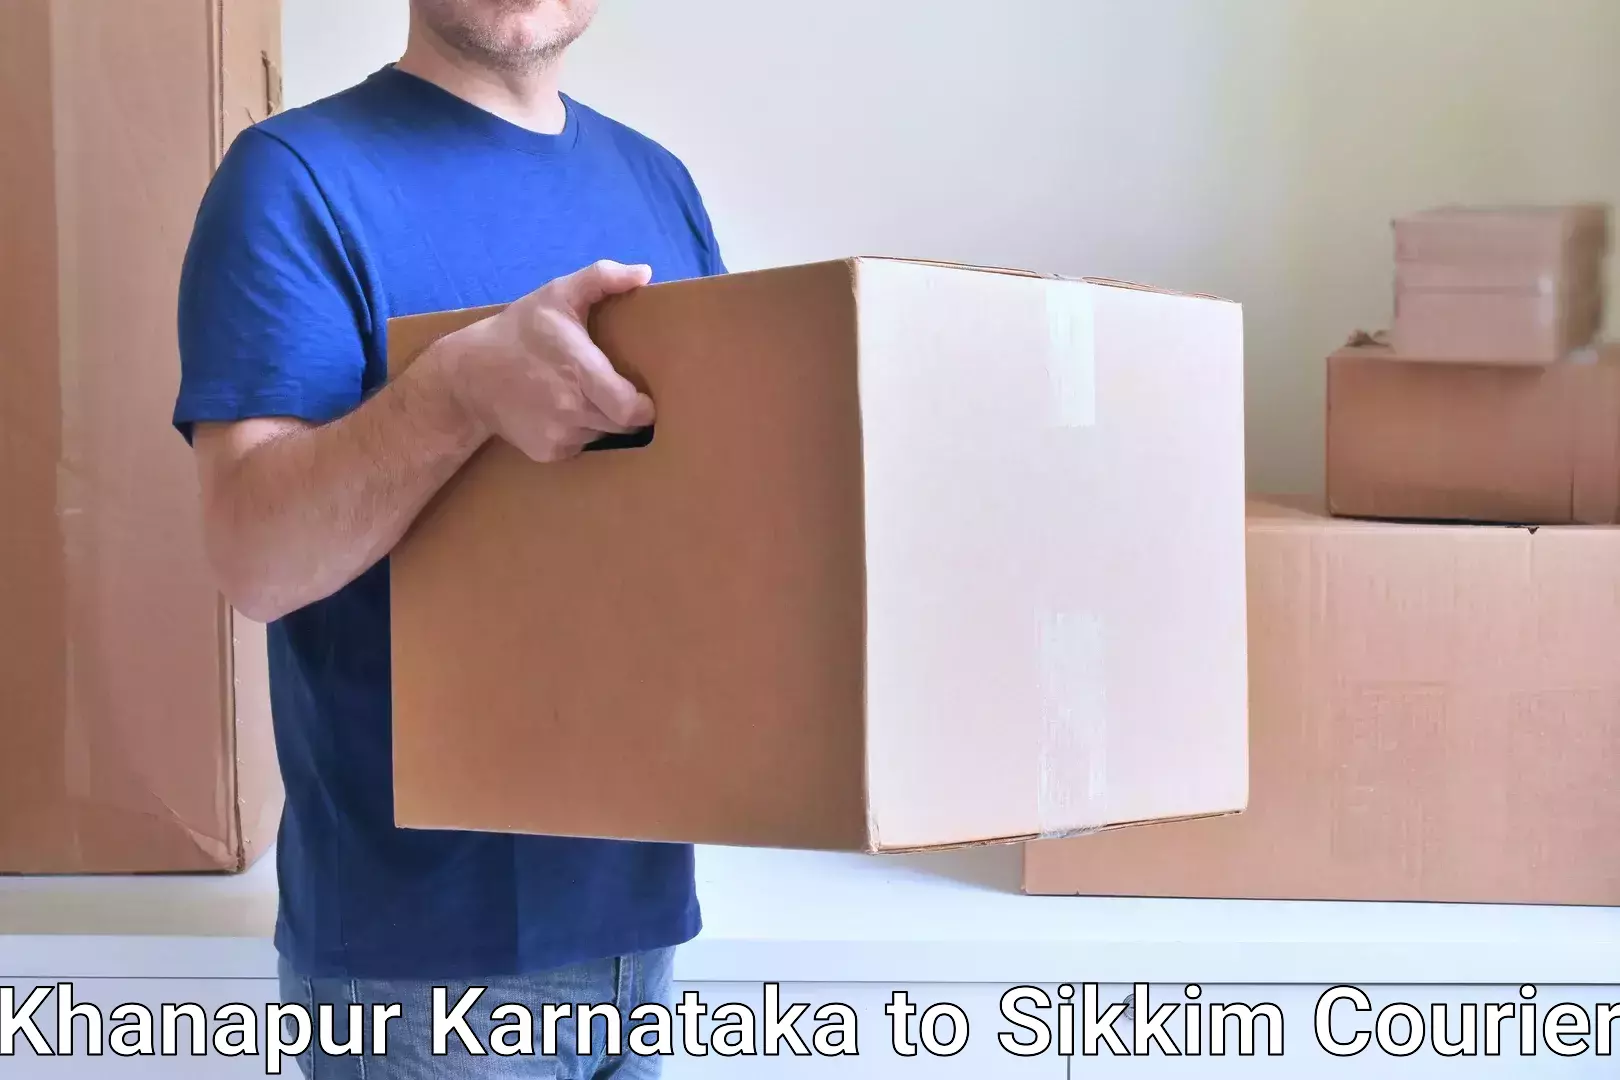 Digital courier platforms Khanapur Karnataka to Singtam